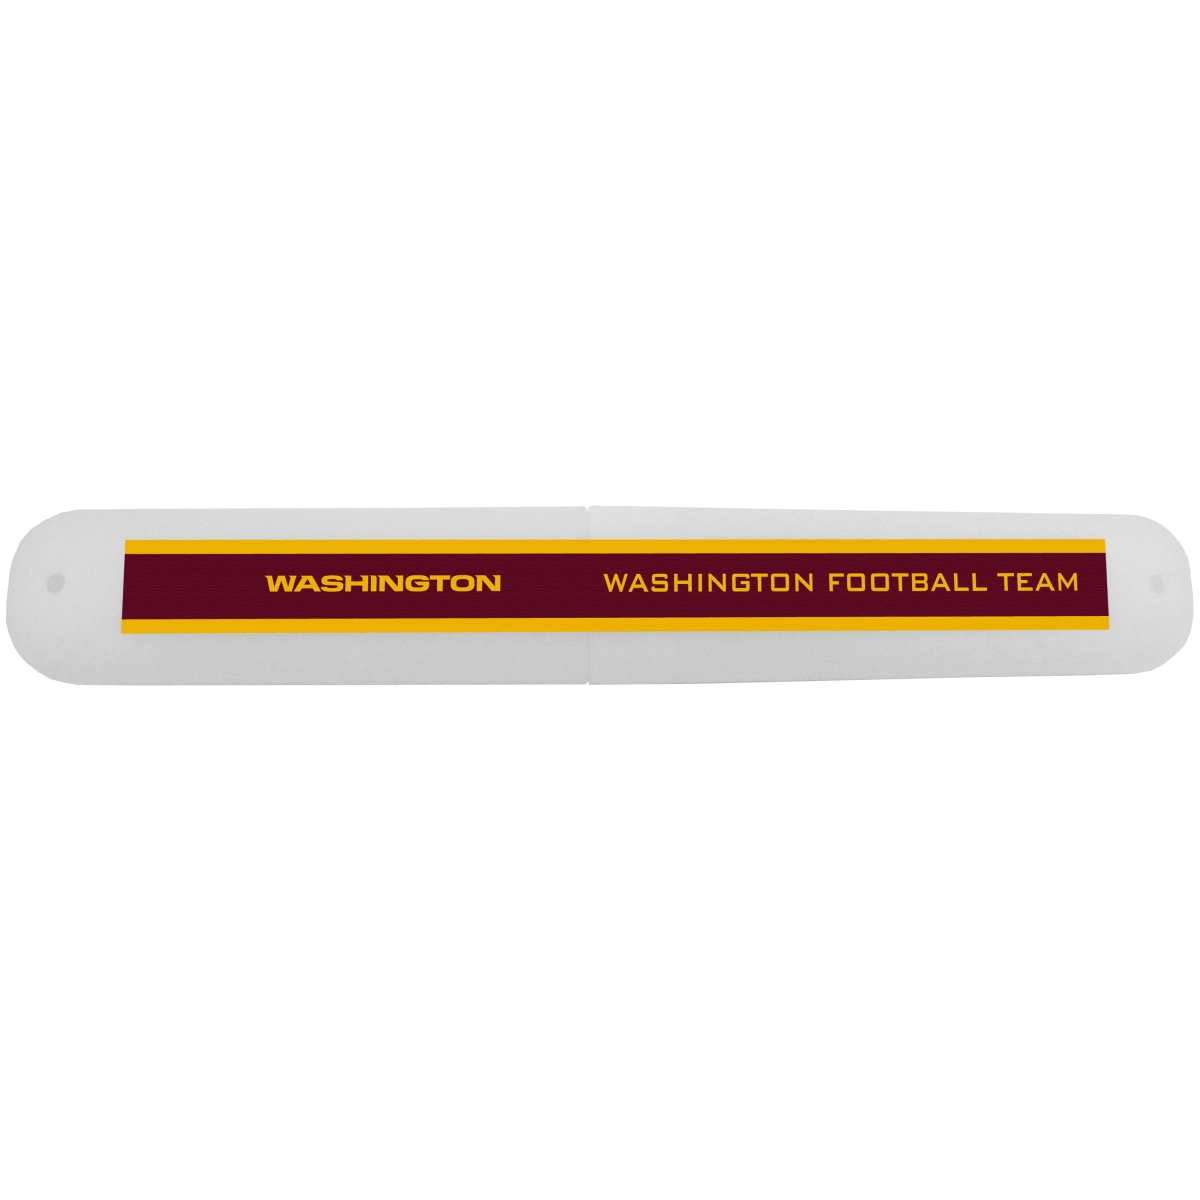 Picture of Siskiyou FTBC135 Unisex NFL Washington Redskins Travel Toothbrush Case - One Size